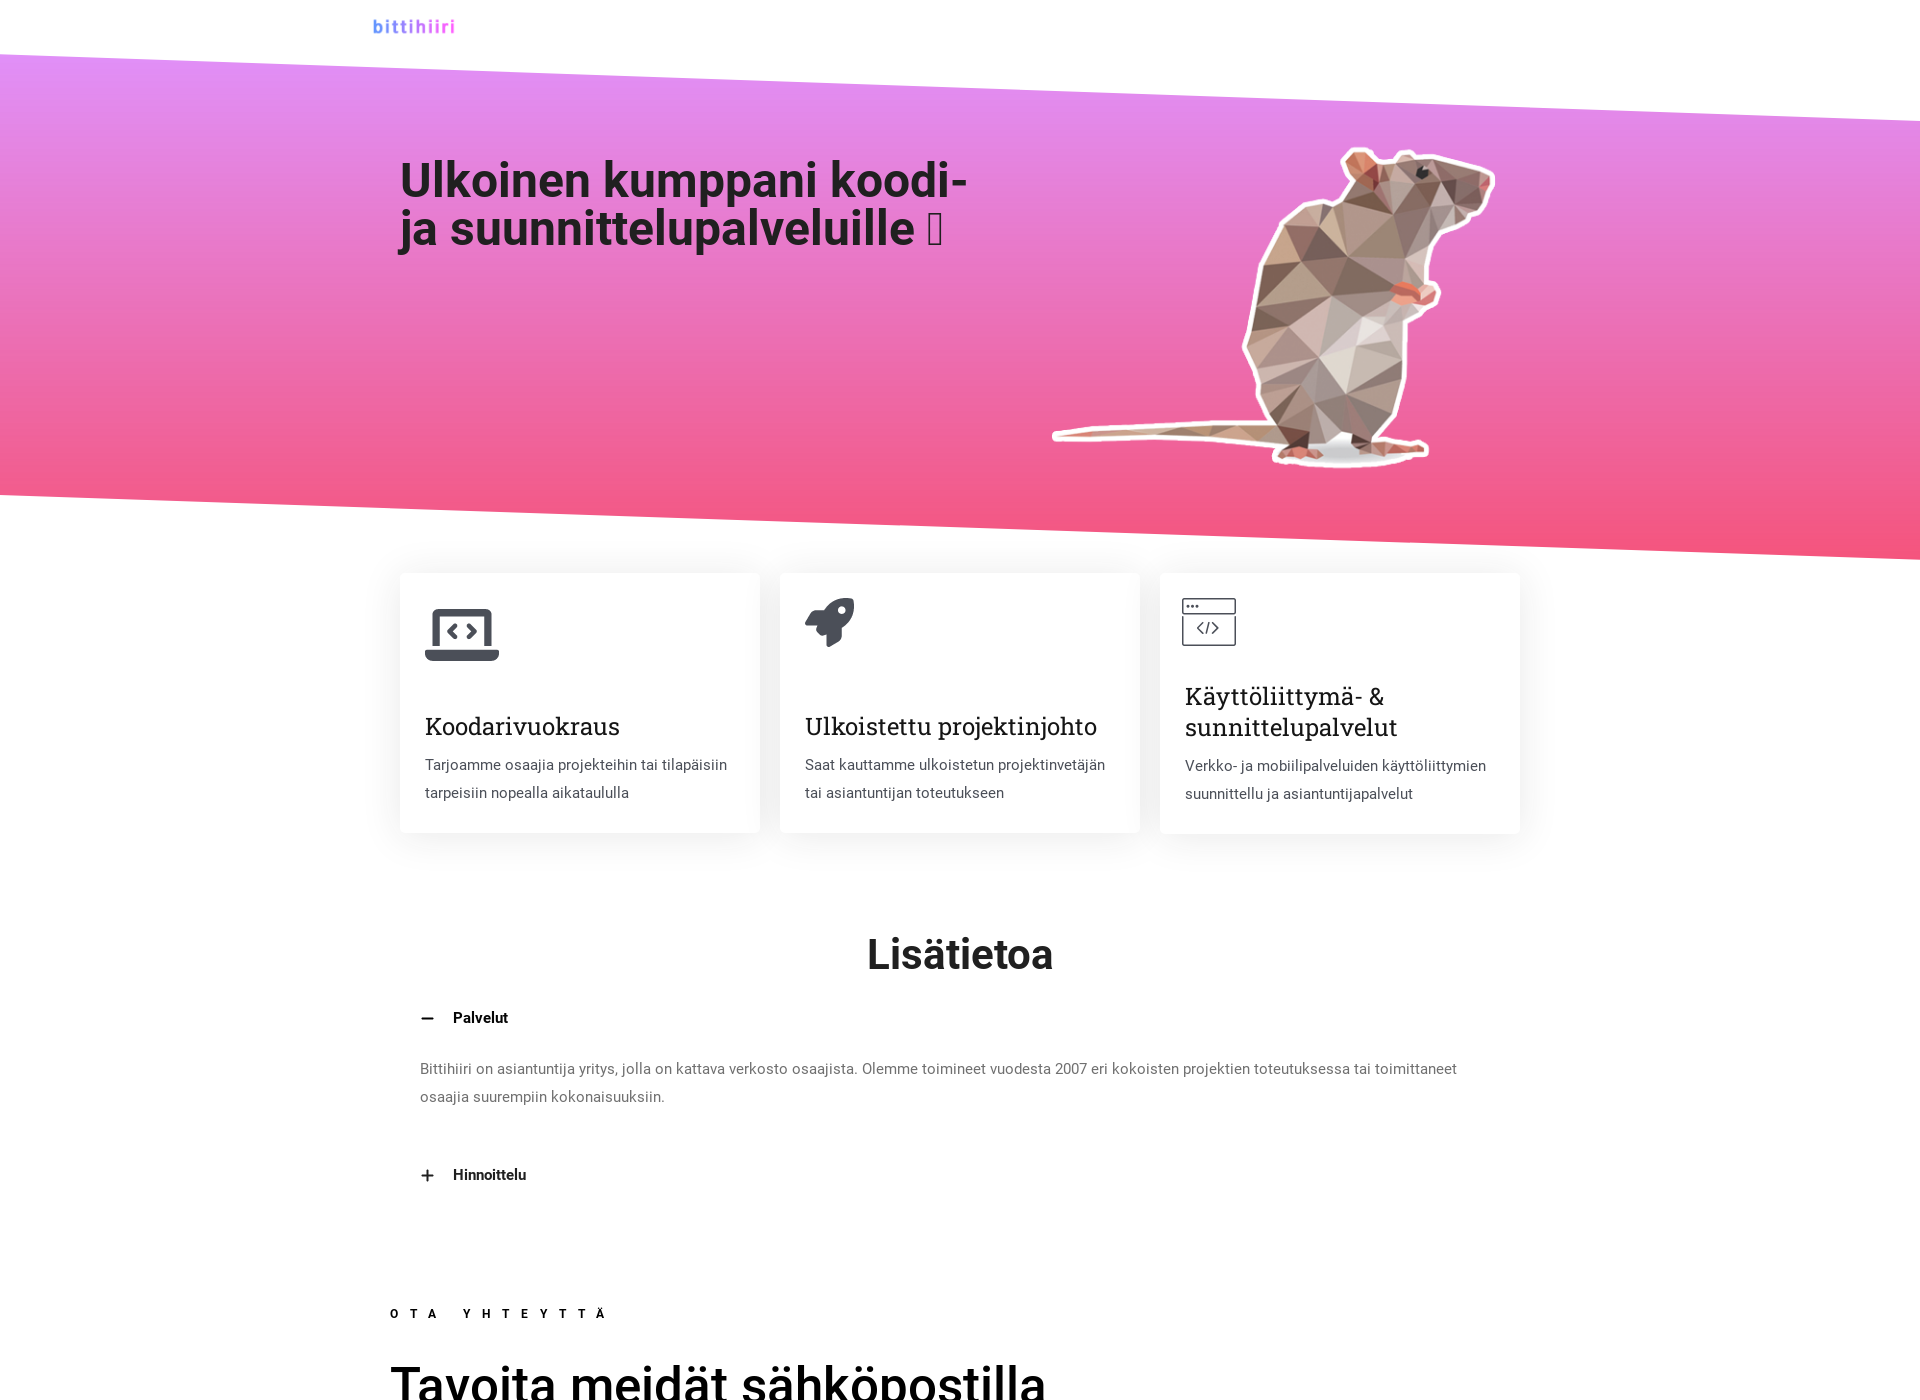 Skärmdump för bittihiiri.fi